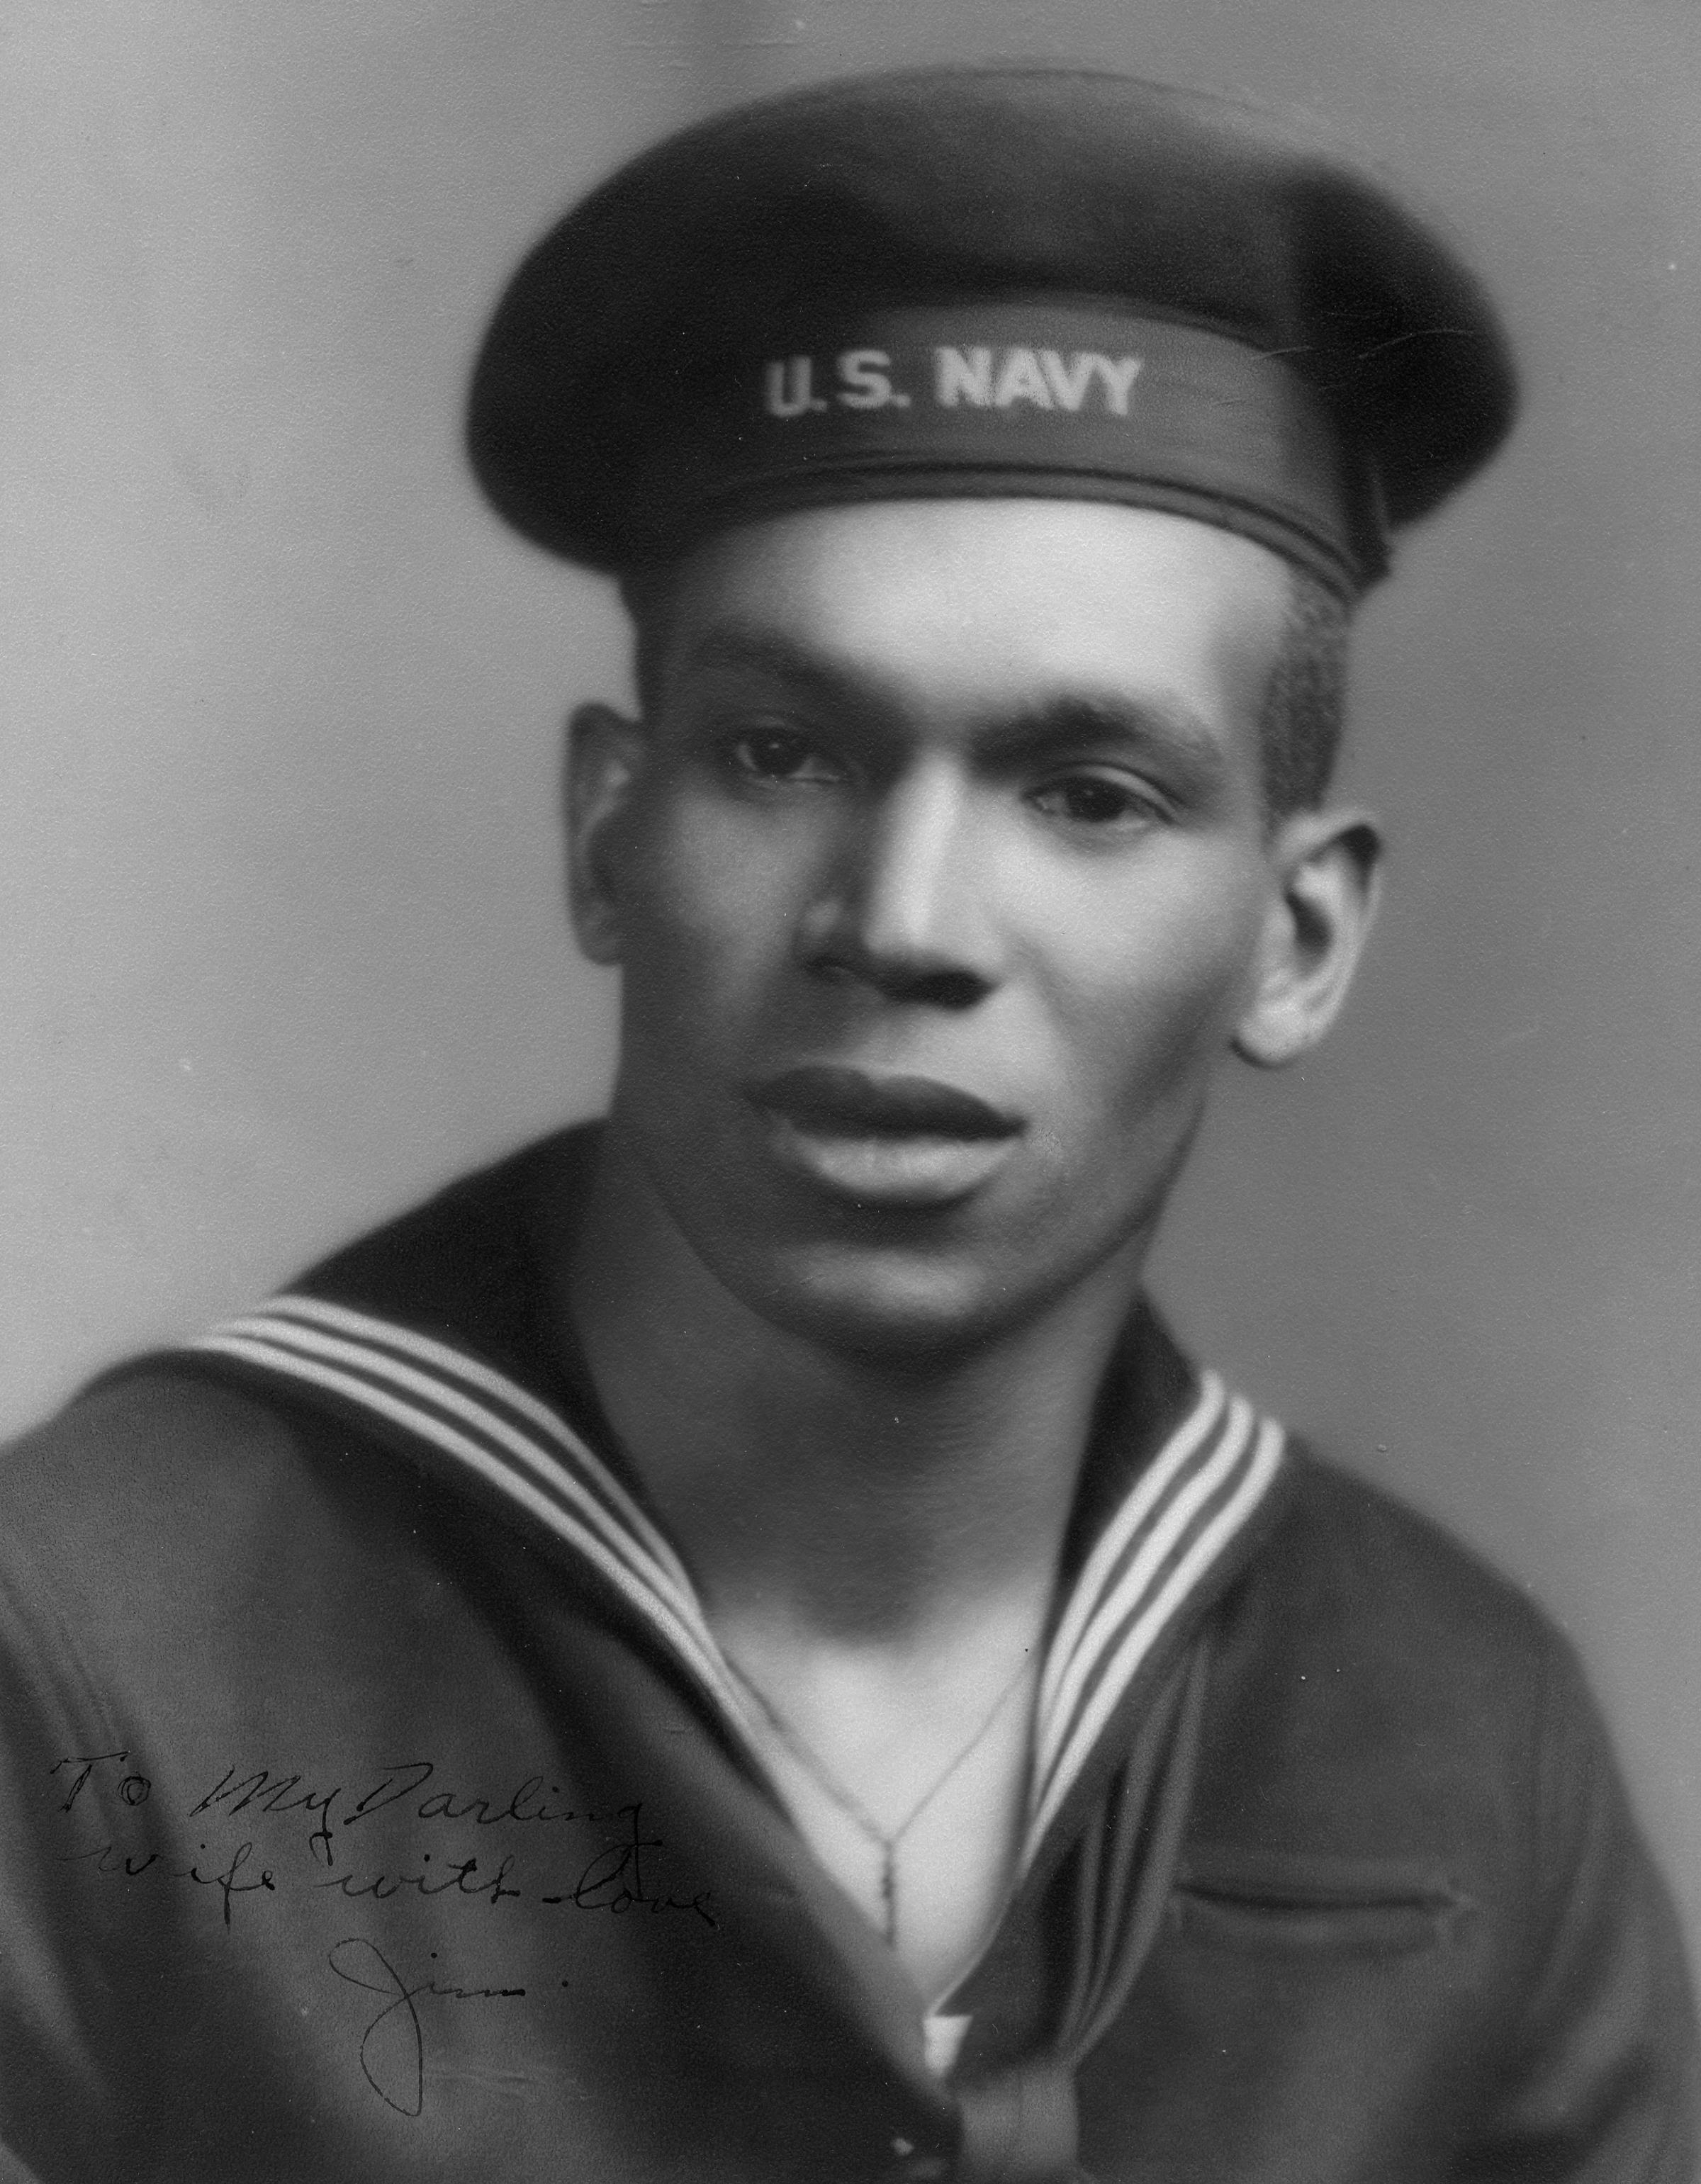 James Weems, U.S. Navy